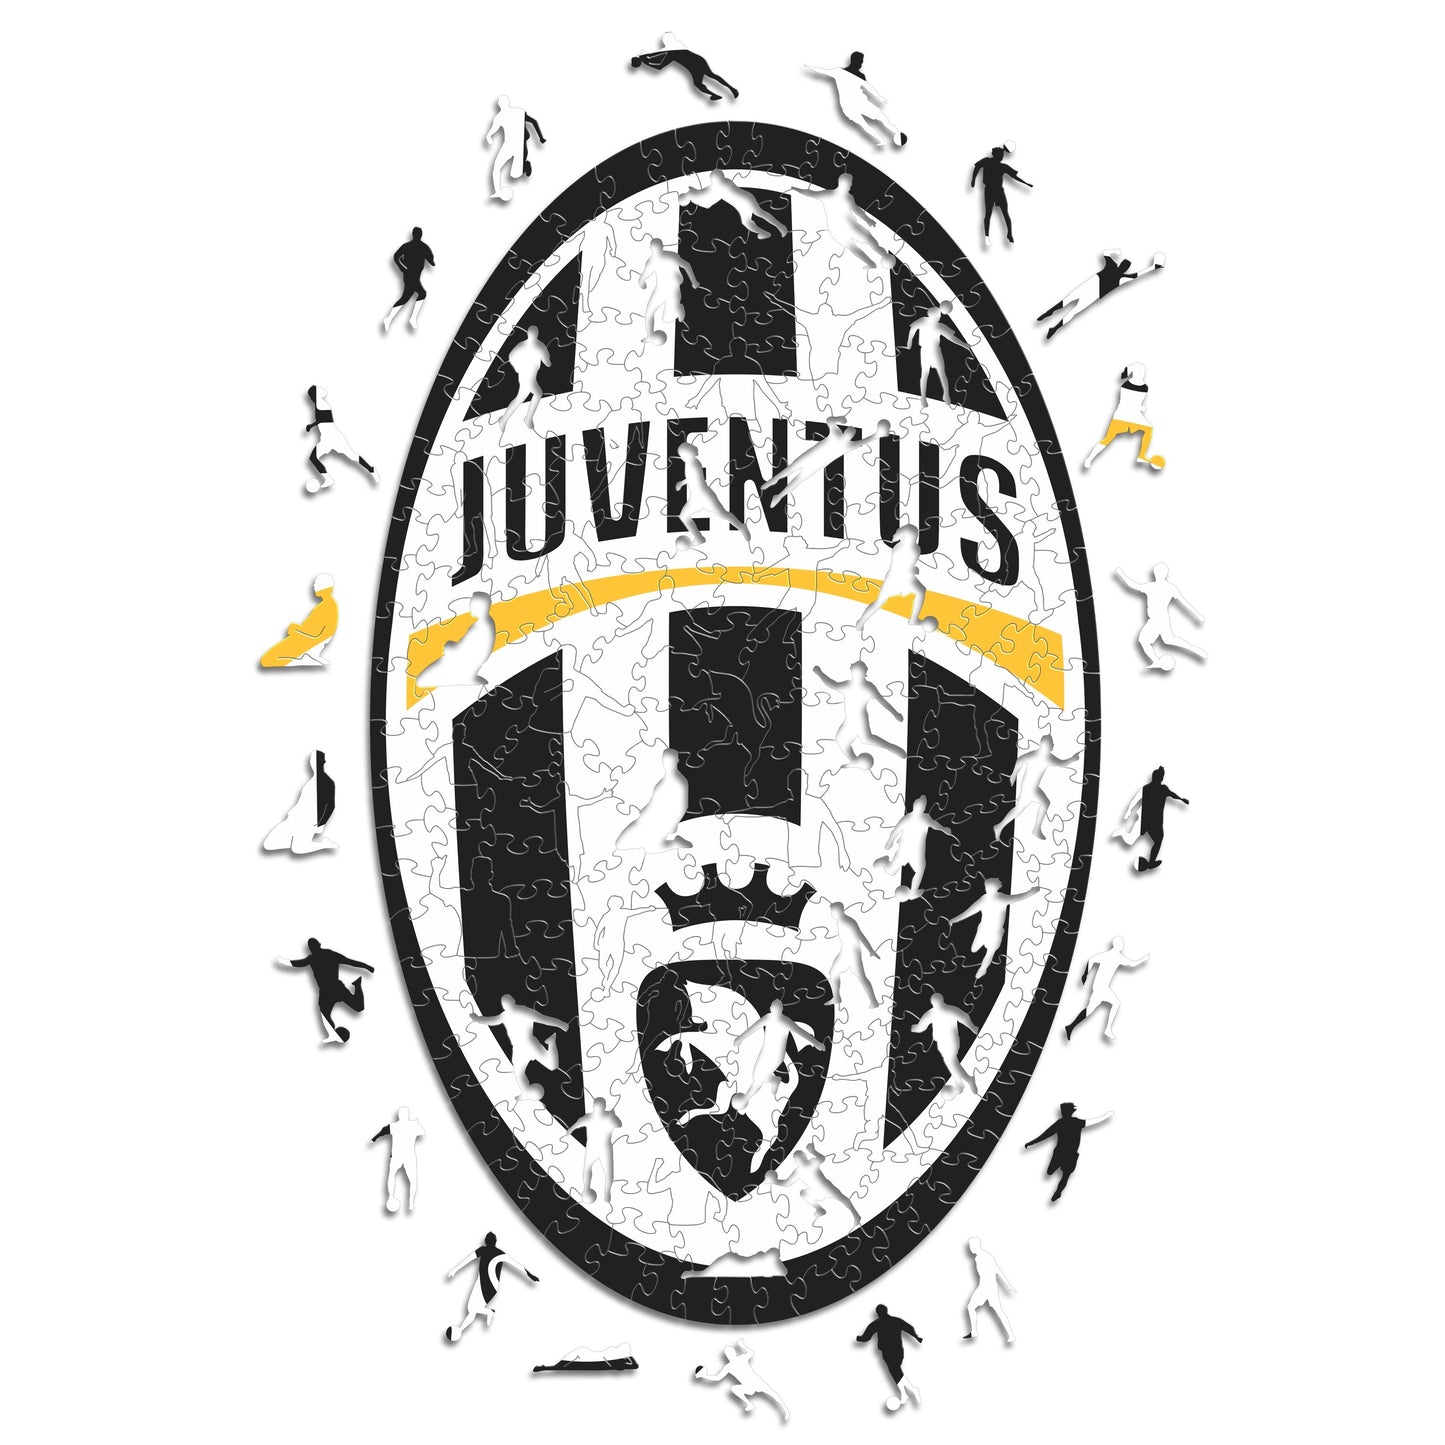 2 PACK Juventus FC® Logo + Retro Crest